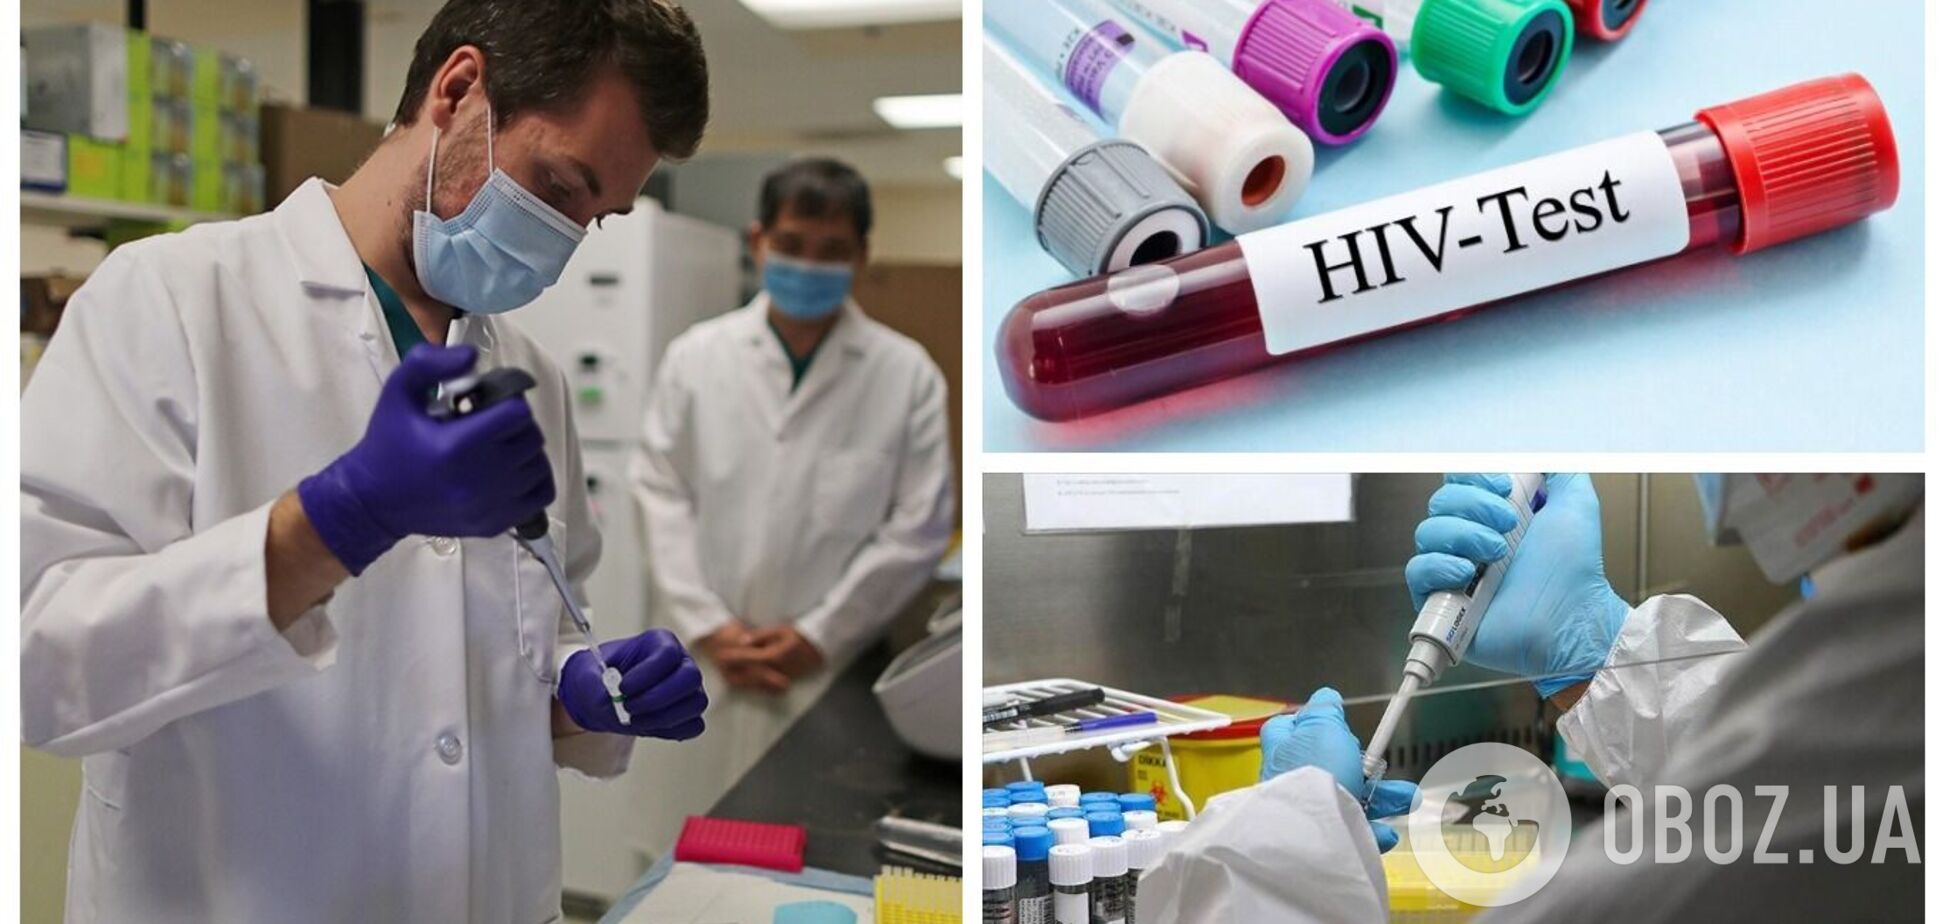 В Нидерландах обнаружили особо заразный штамм ВИЧ, который быстрее ослабляет иммунную систему